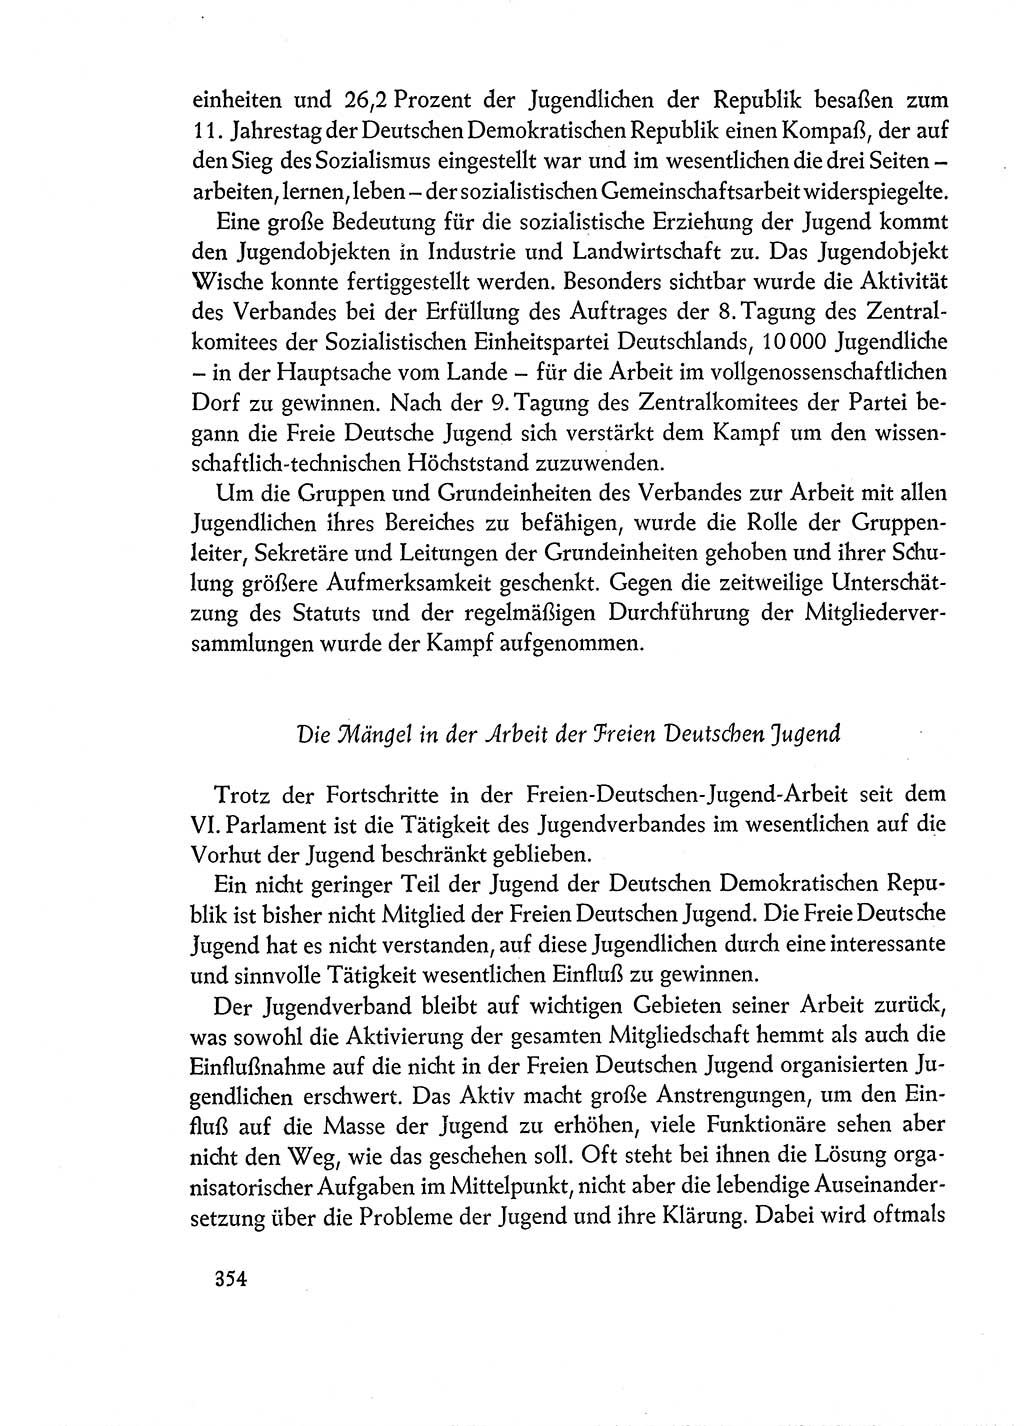 Dokumente der Sozialistischen Einheitspartei Deutschlands (SED) [Deutsche Demokratische Republik (DDR)] 1960-1961, Seite 354 (Dok. SED DDR 1960-1961, S. 354)